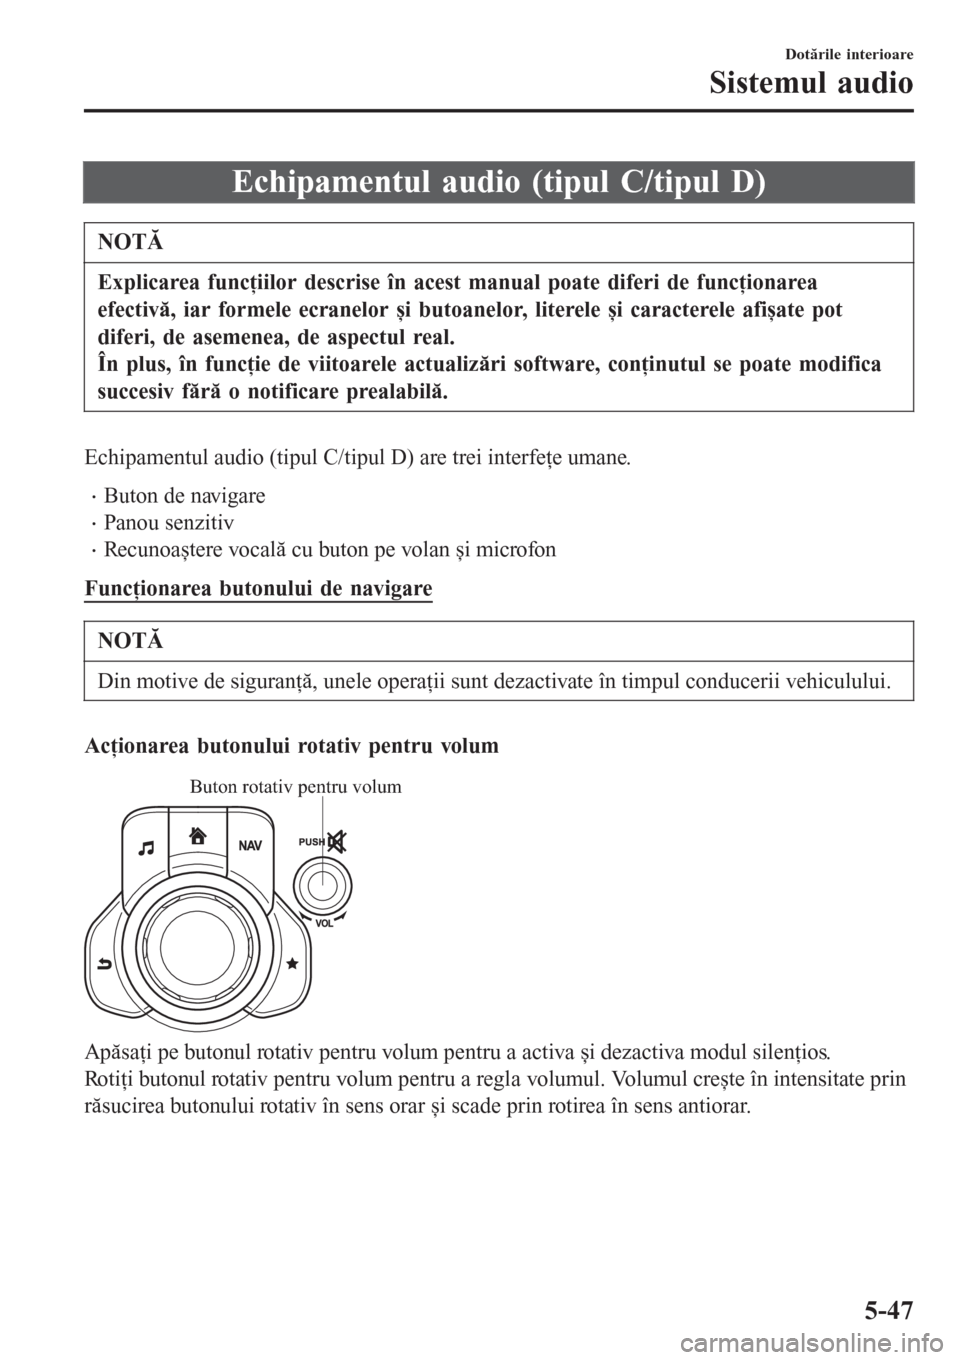 MAZDA MODEL 3 HATCHBACK 2015  Manualul de utilizare (in Romanian) Echipamentul audio (tipul C/tipul D)
NOTĂ
Explicarea funcţiilor descrise în acest manual poate diferi de funcţionarea
efectivă, iar formele ecranelor și butoanelor, literele și caracterele afi�